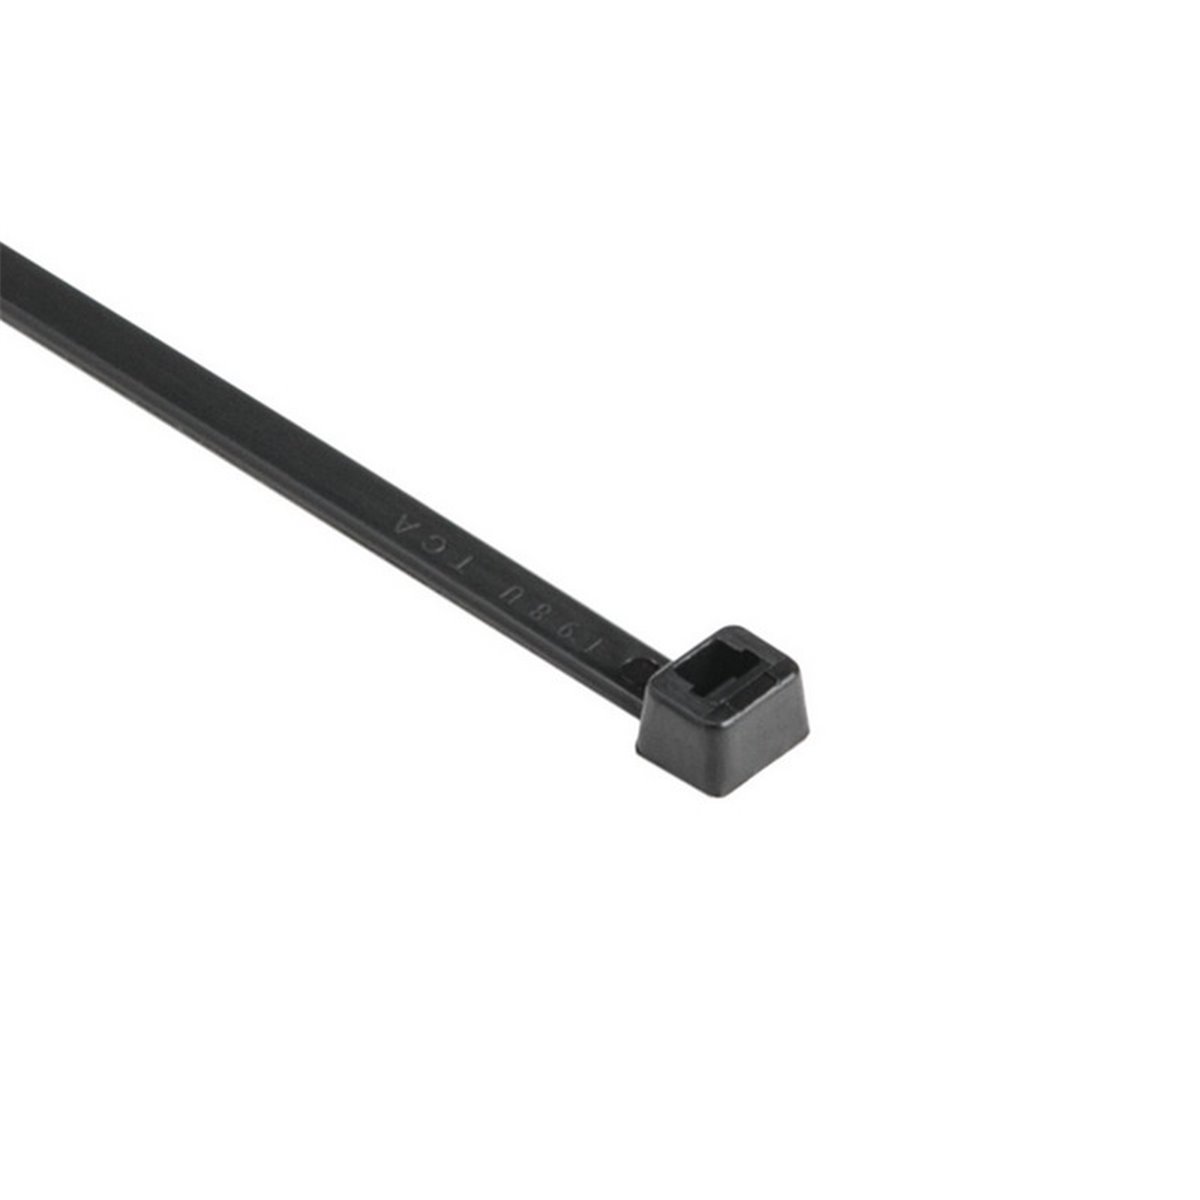 Cable tie T150M-PA66HS-BK, 8.9x530mm, black, 25 pcs. HellermannTyton